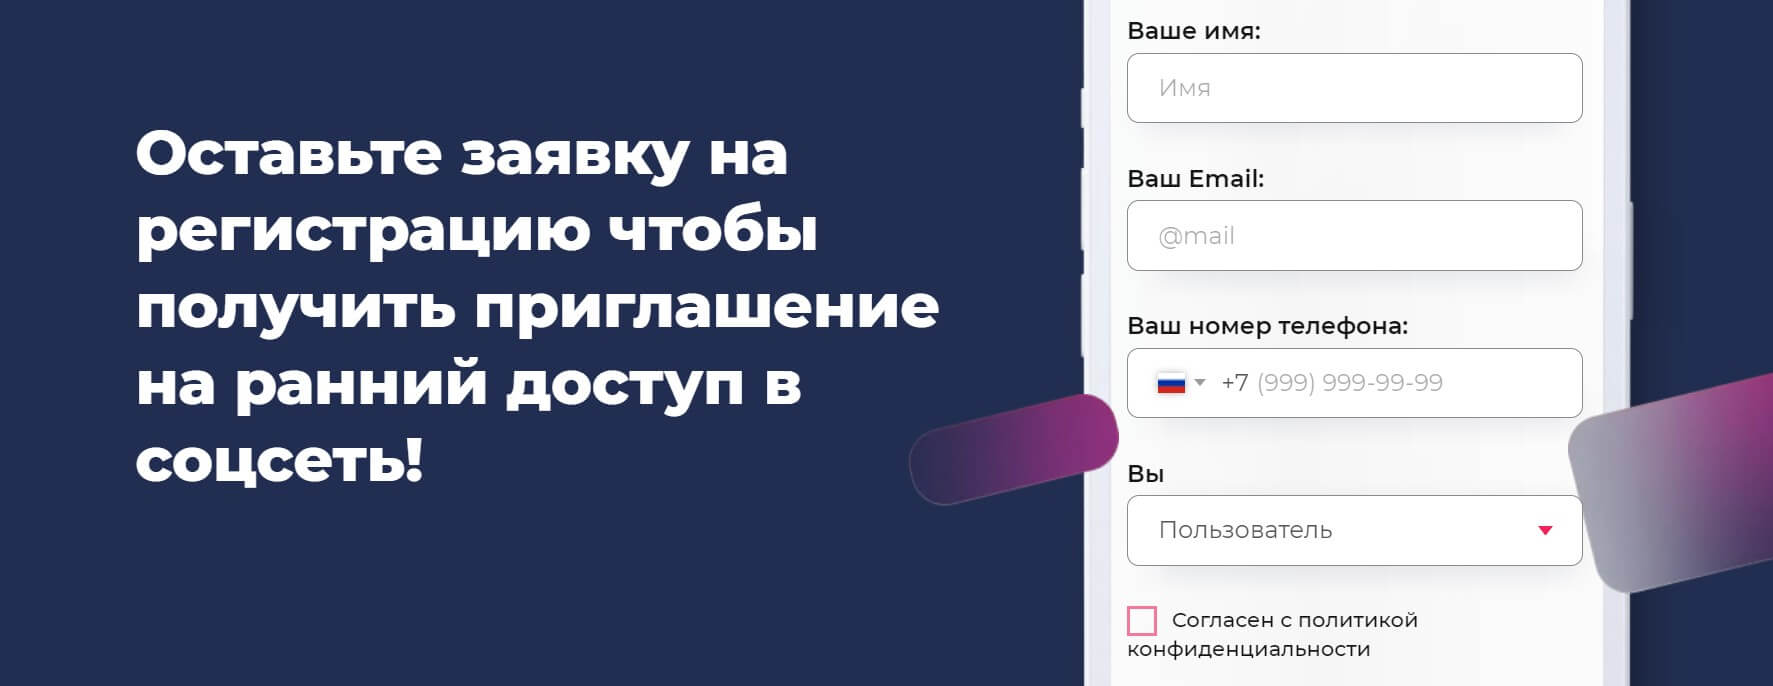 Обзор российских аналогов Инстаграма и их возможности для бизнеса: Now, Россграм, Грустнограм, Limbiko 